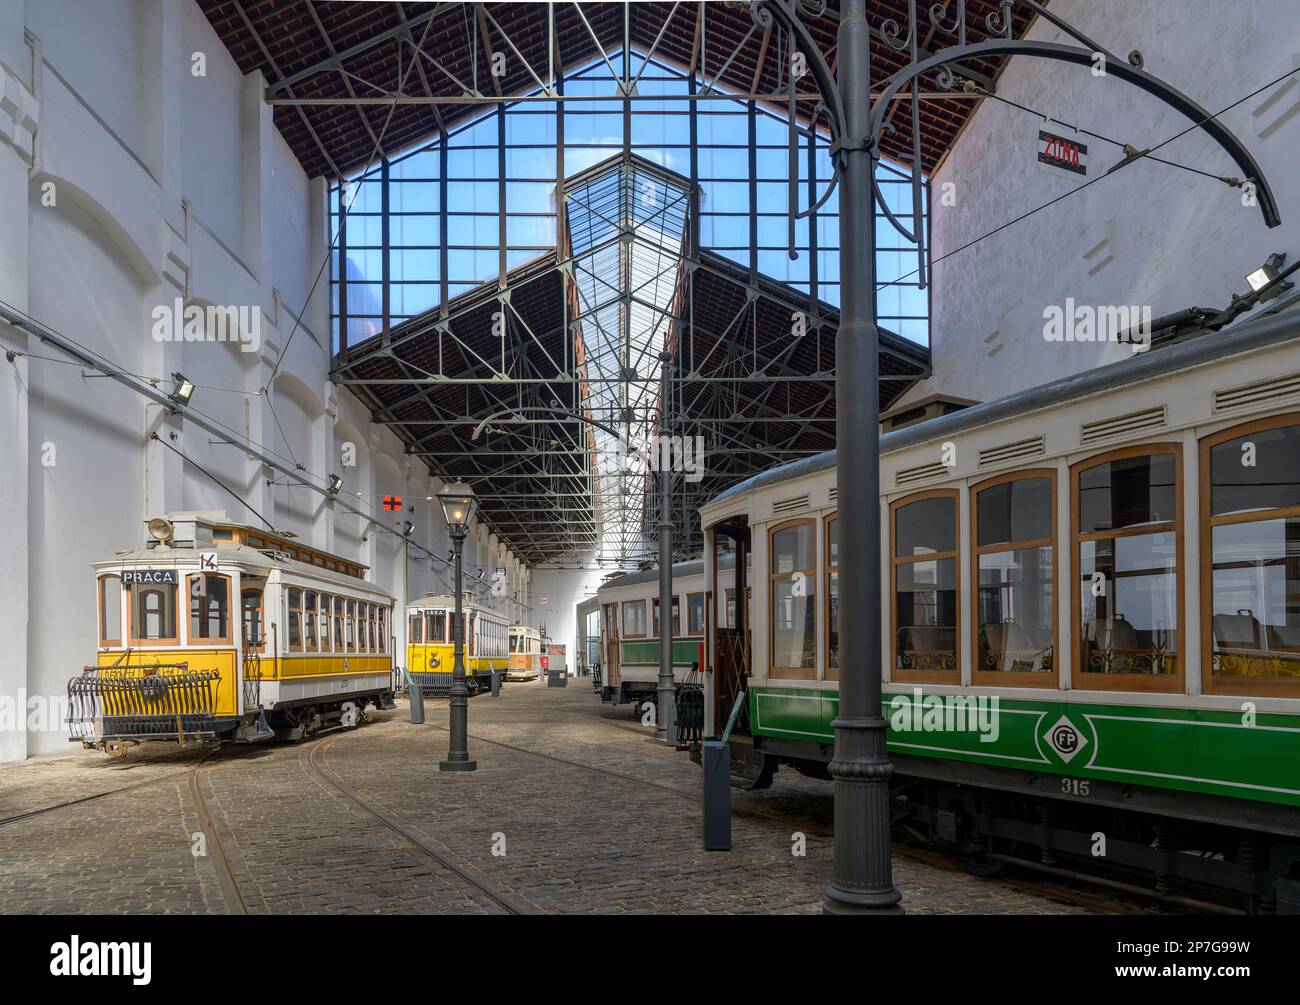 Museo Porto Tramcar - Museu do carro eléctrico. Un'antica stazione elettrica che ospita un museo dedicato alla storia dei tram di Porto. Foto Stock